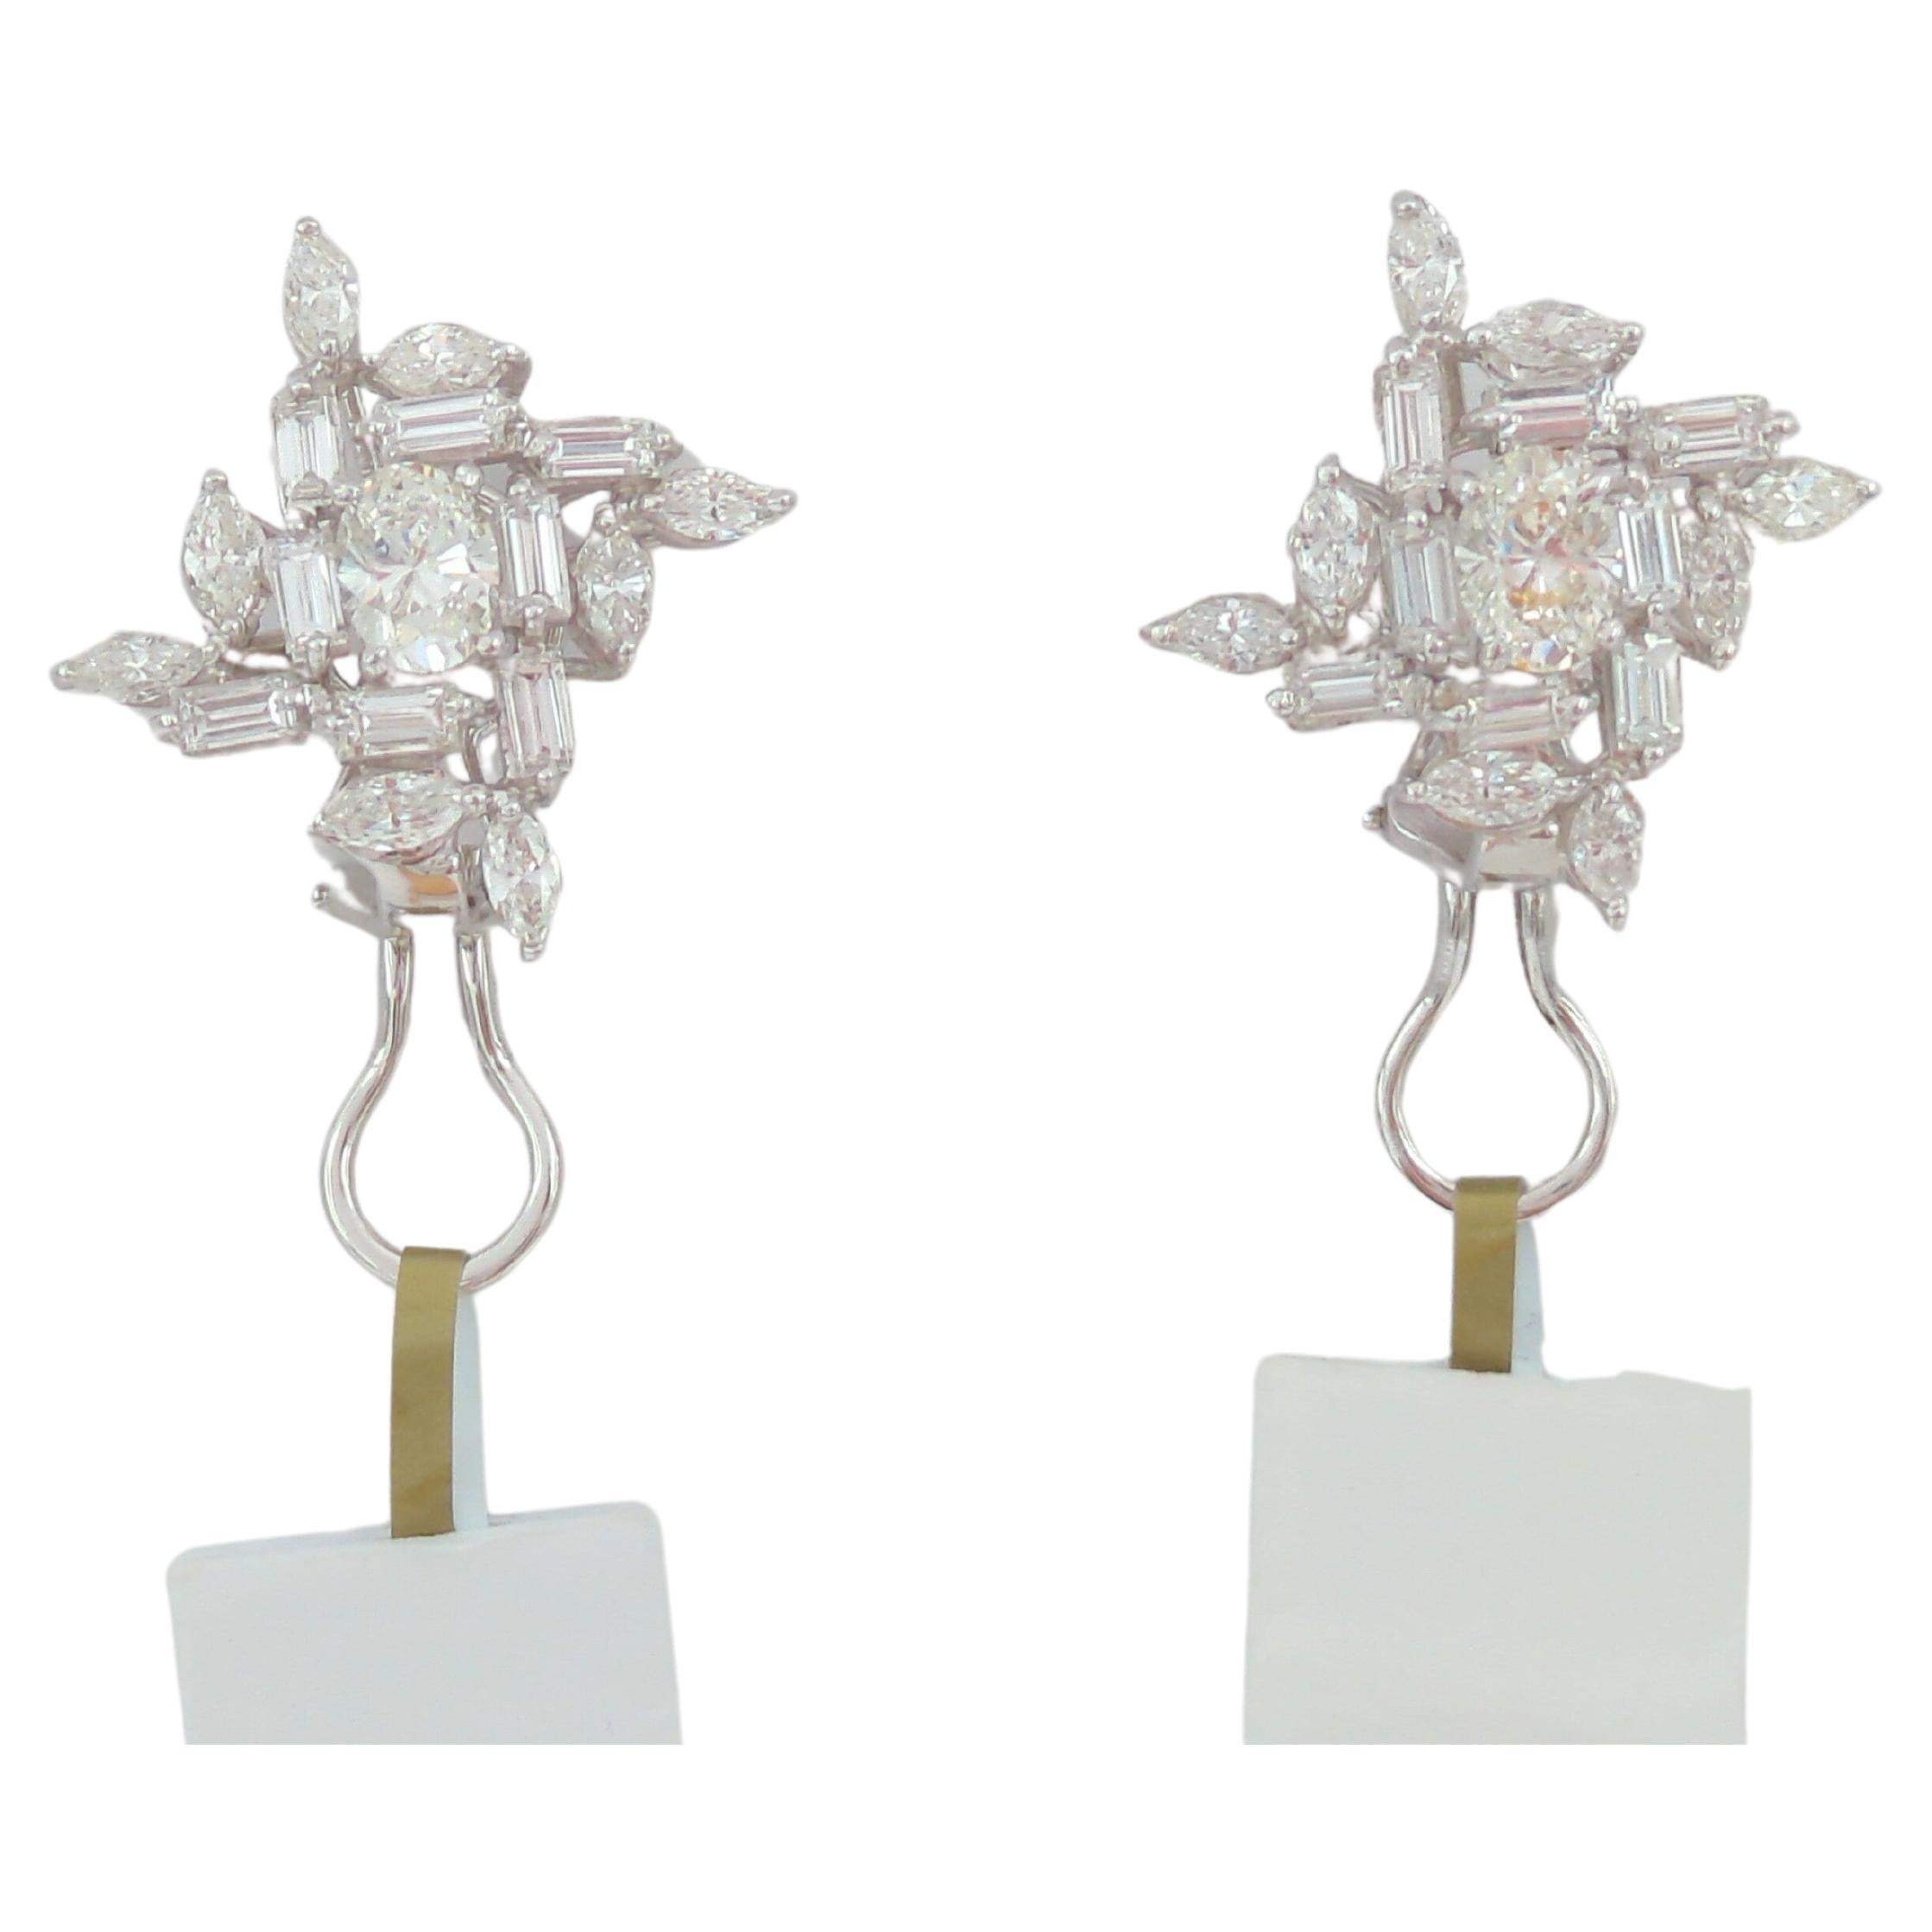 White Diamond Mix Shape Cluster Earrings in 18K White Gold